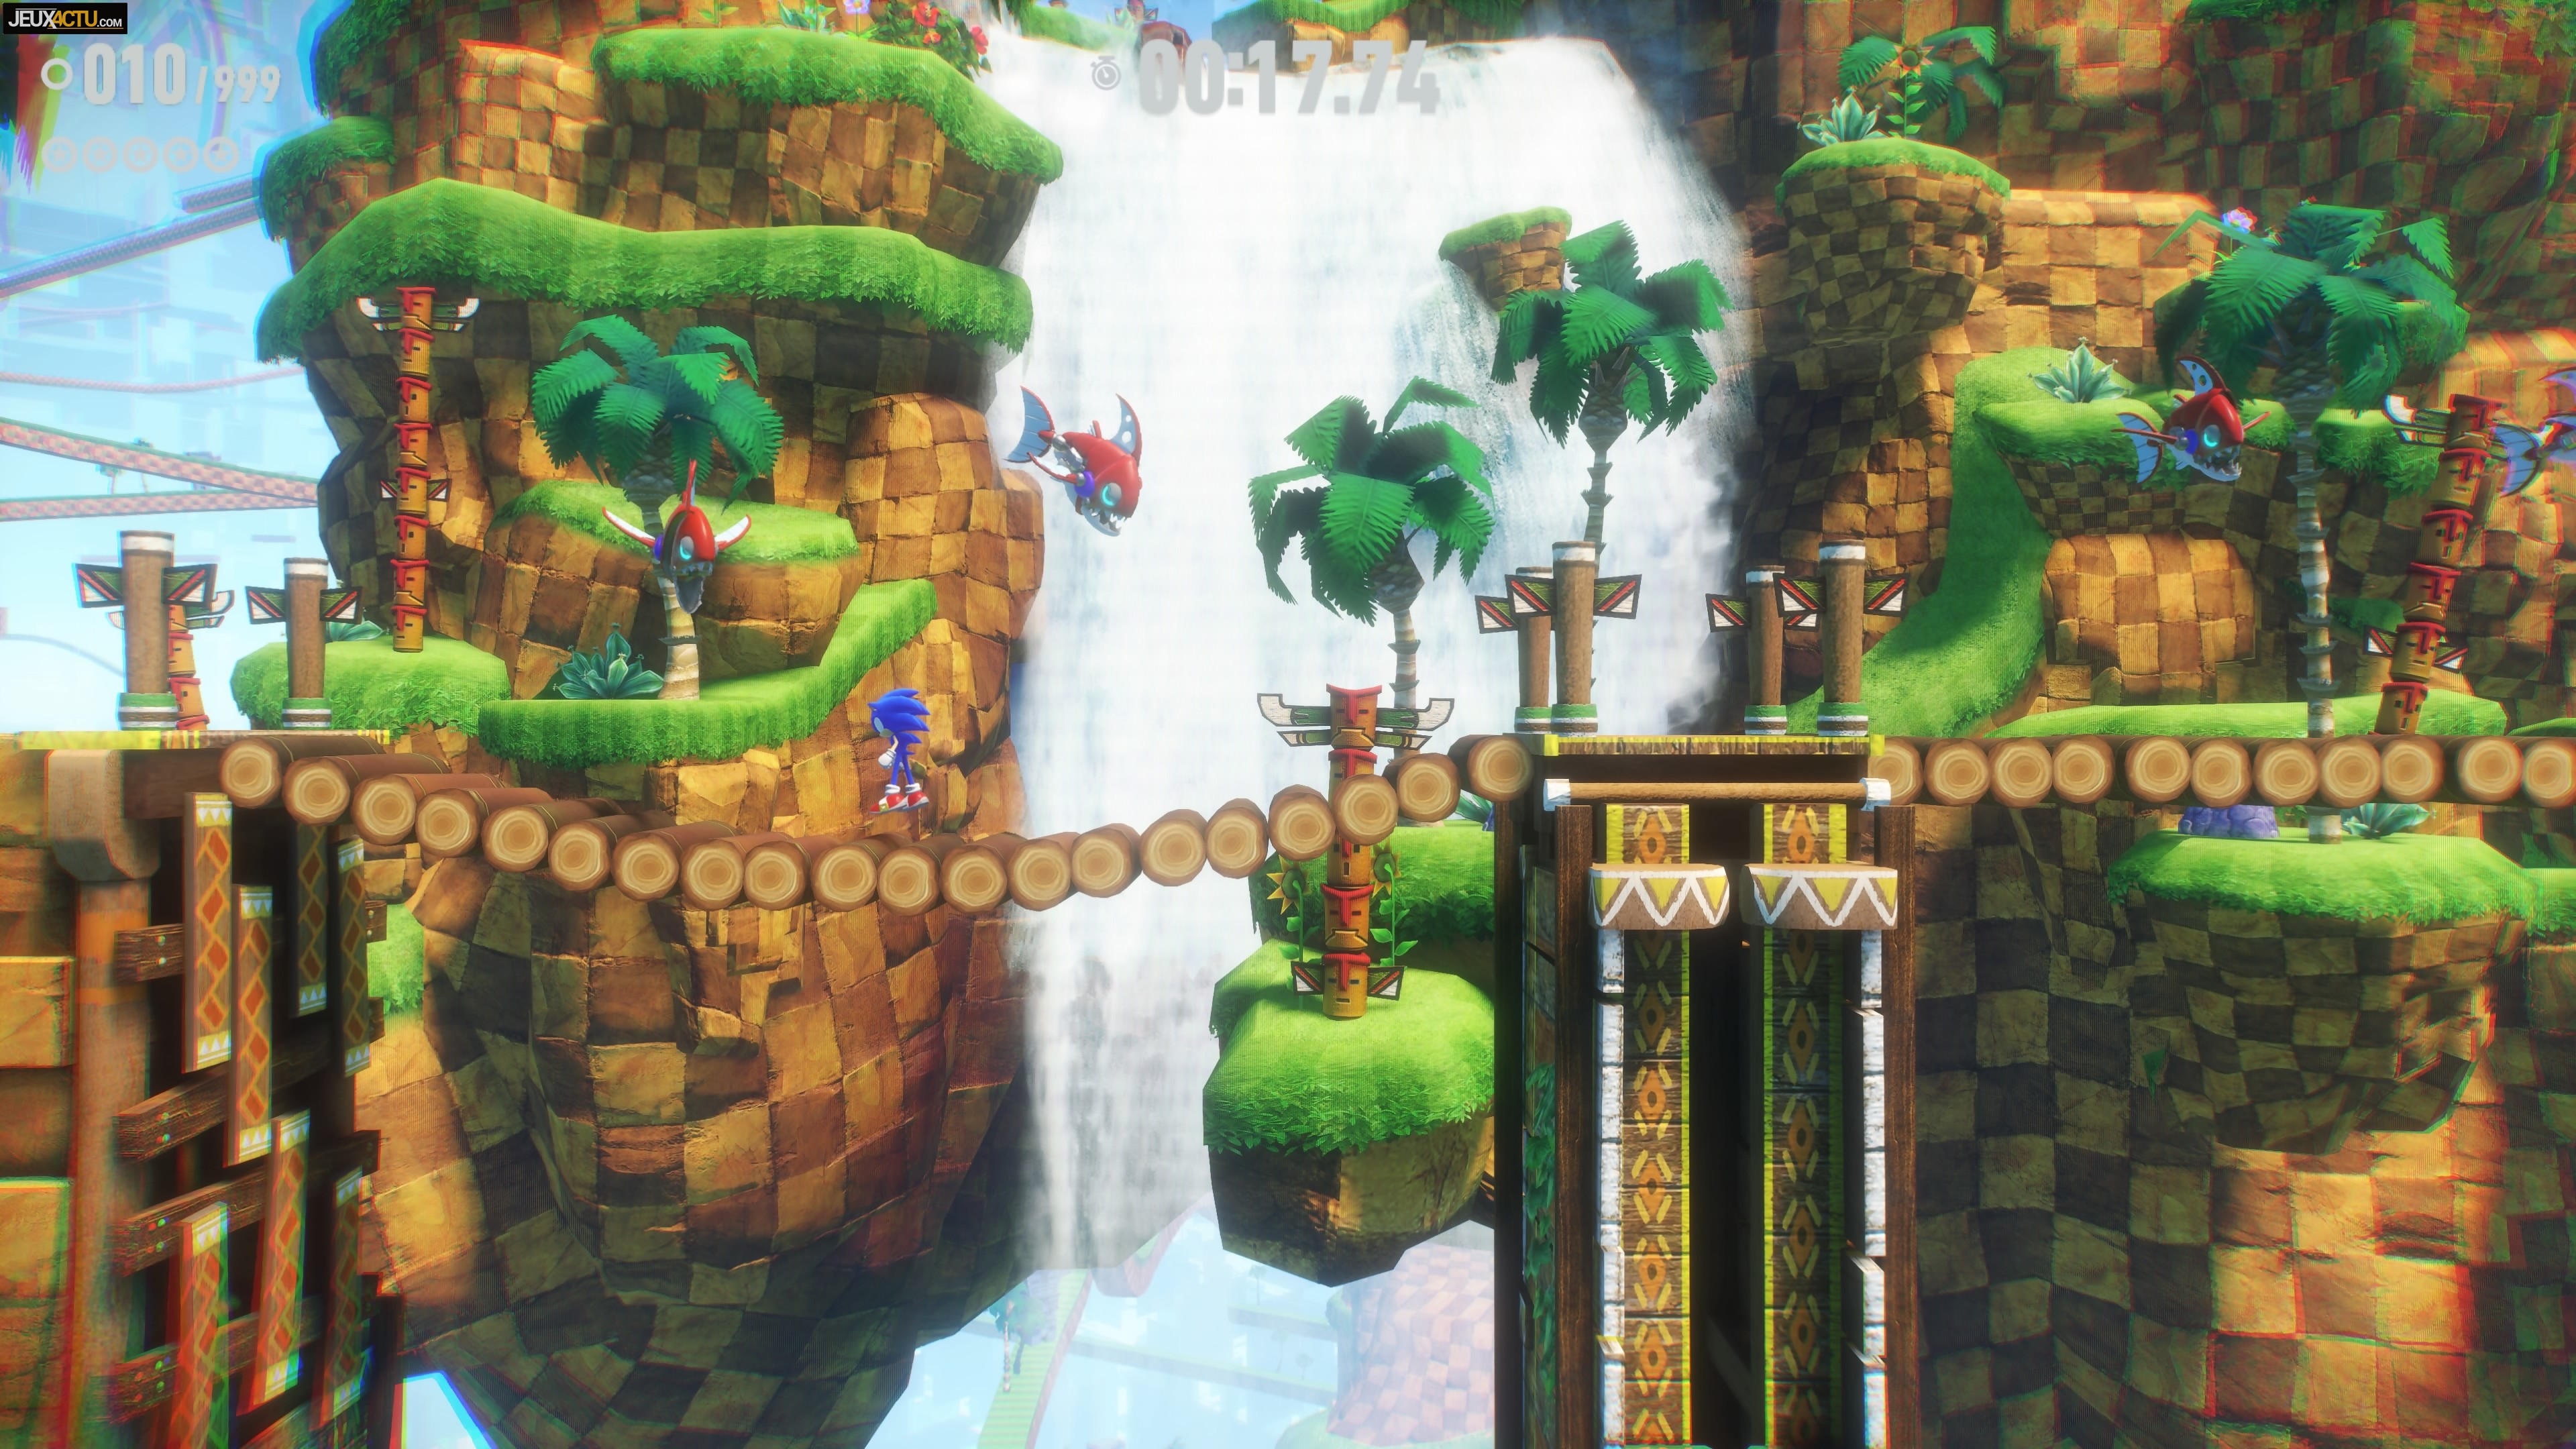 Test Sonic Frontiers : l'open world qui gâche malheureusement tout sur PS4